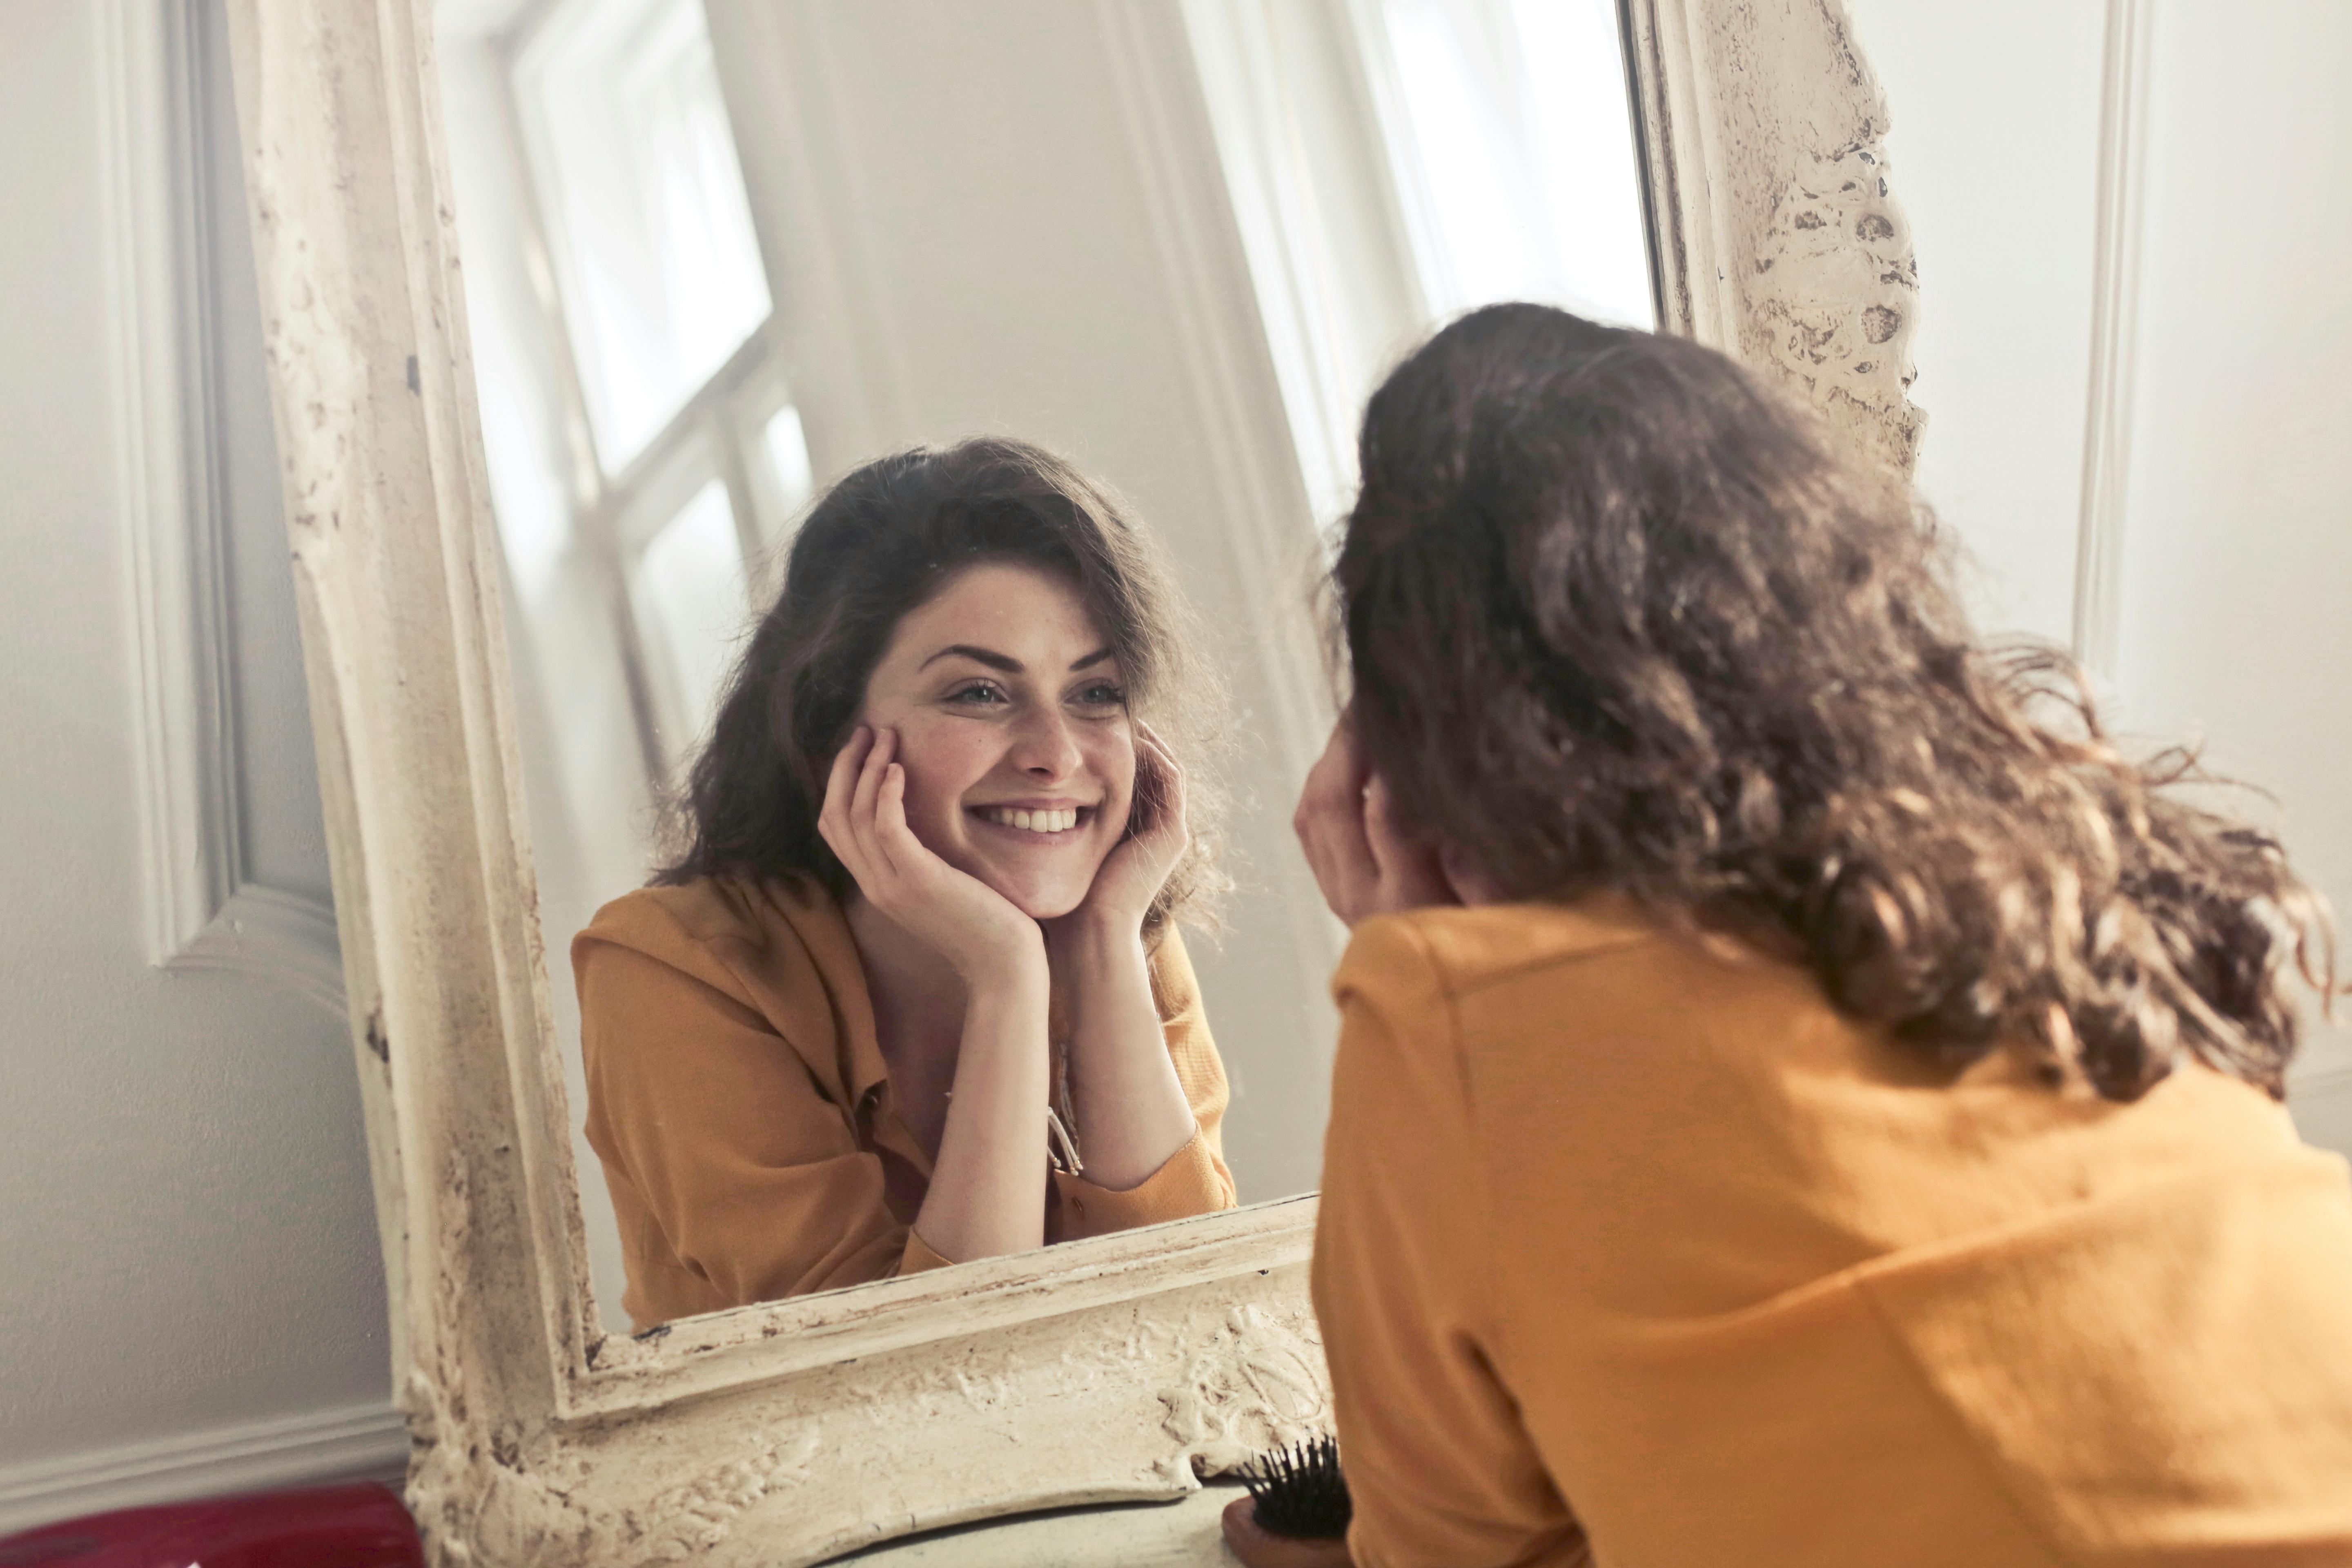 Une femme sourit en regardant son reflet dans un miroir | Source : Pexels